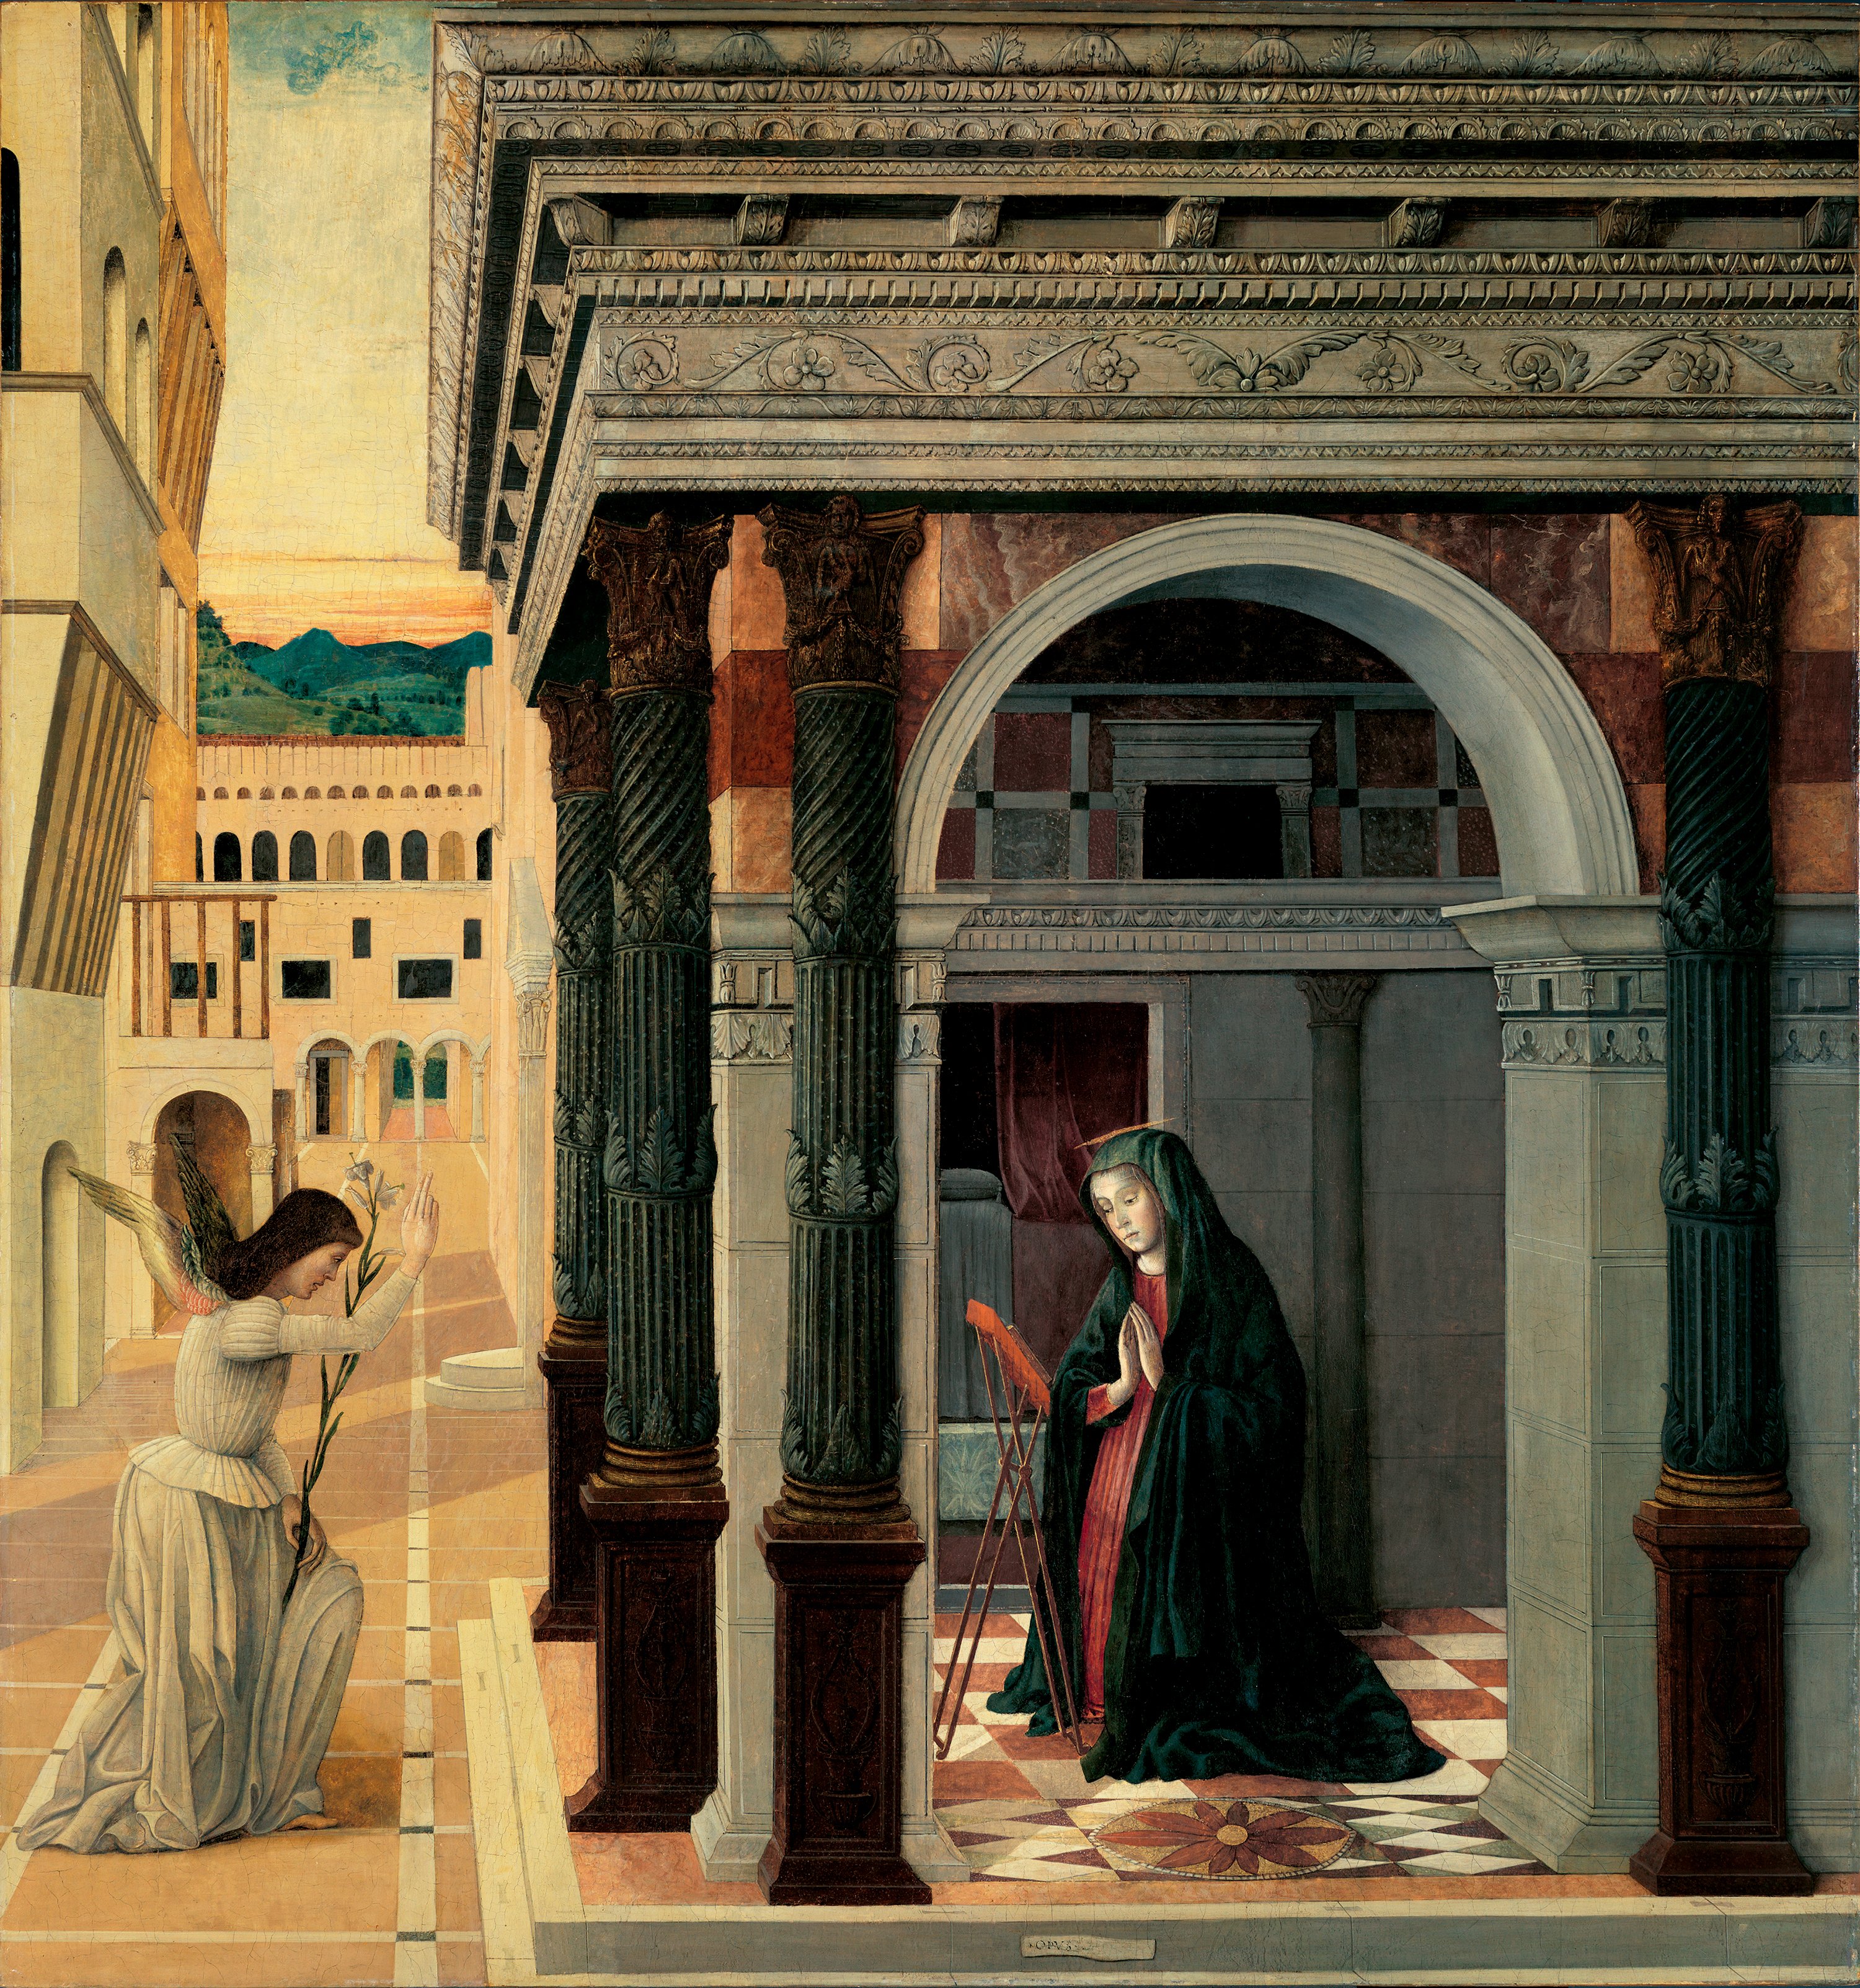 The Annunciation. La Anunciación, c. 1475